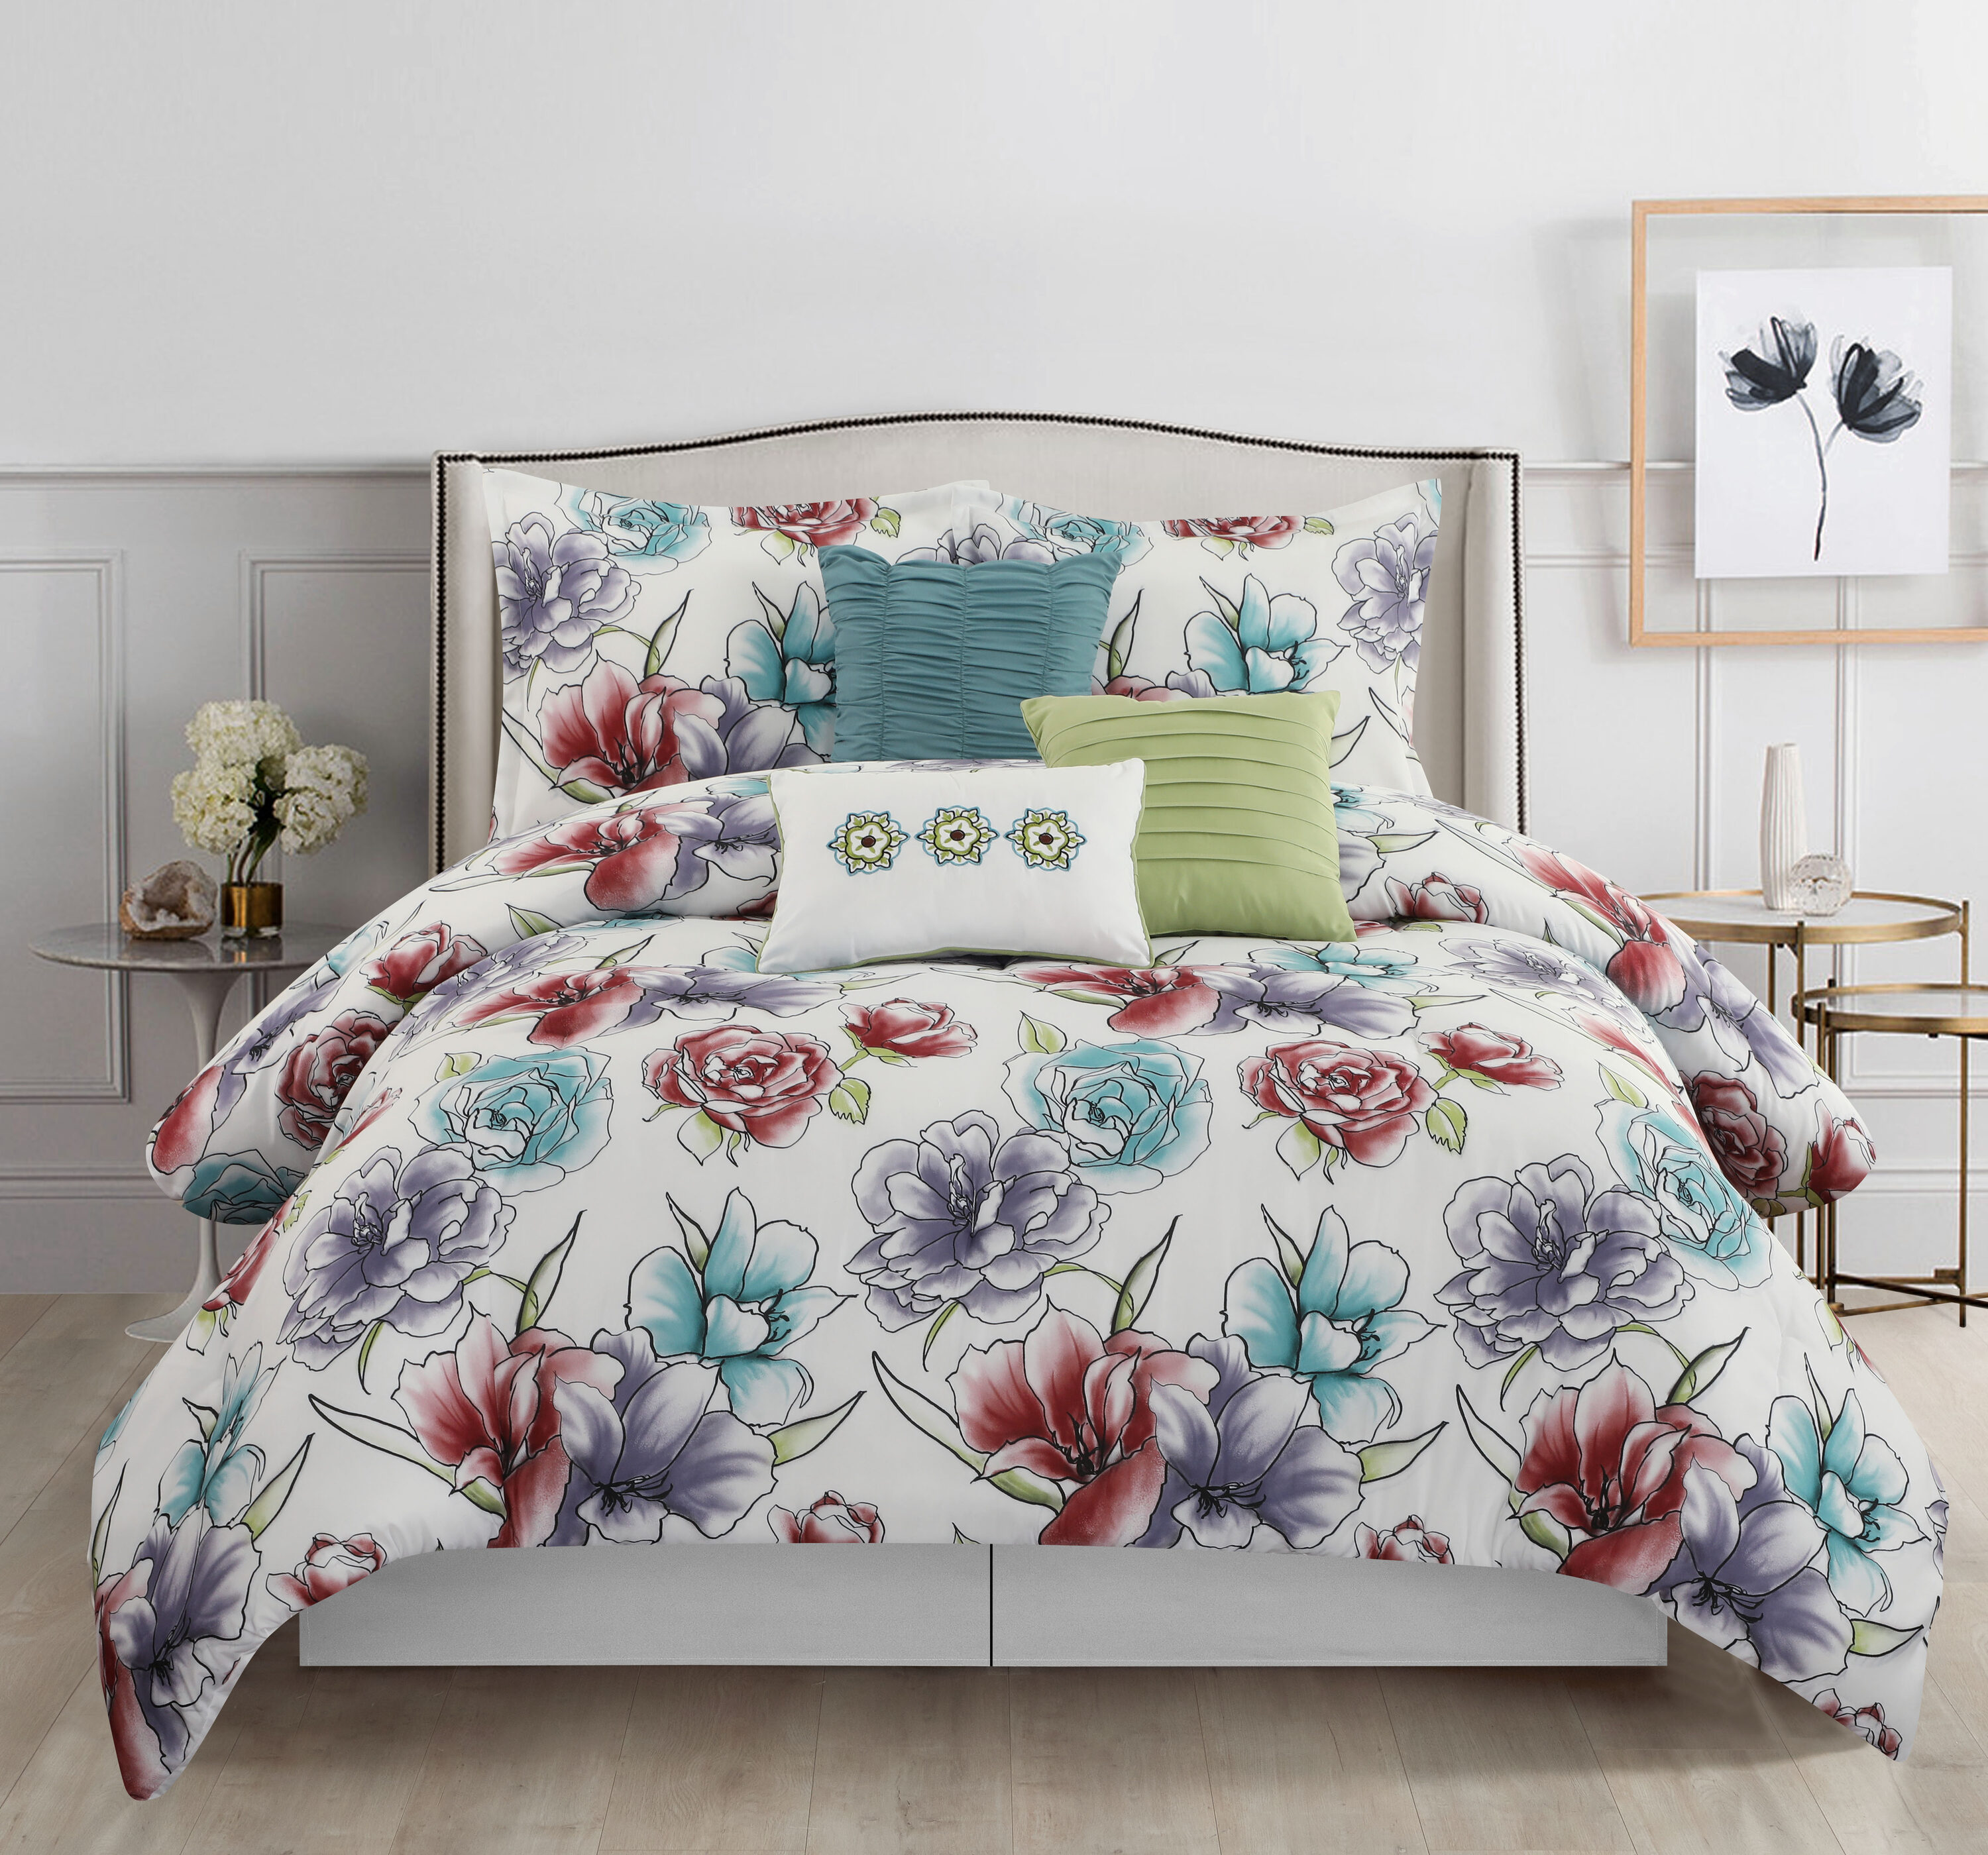 Lush Decor Floral Watercolor 7-Piece Comforter Set, Blue, King